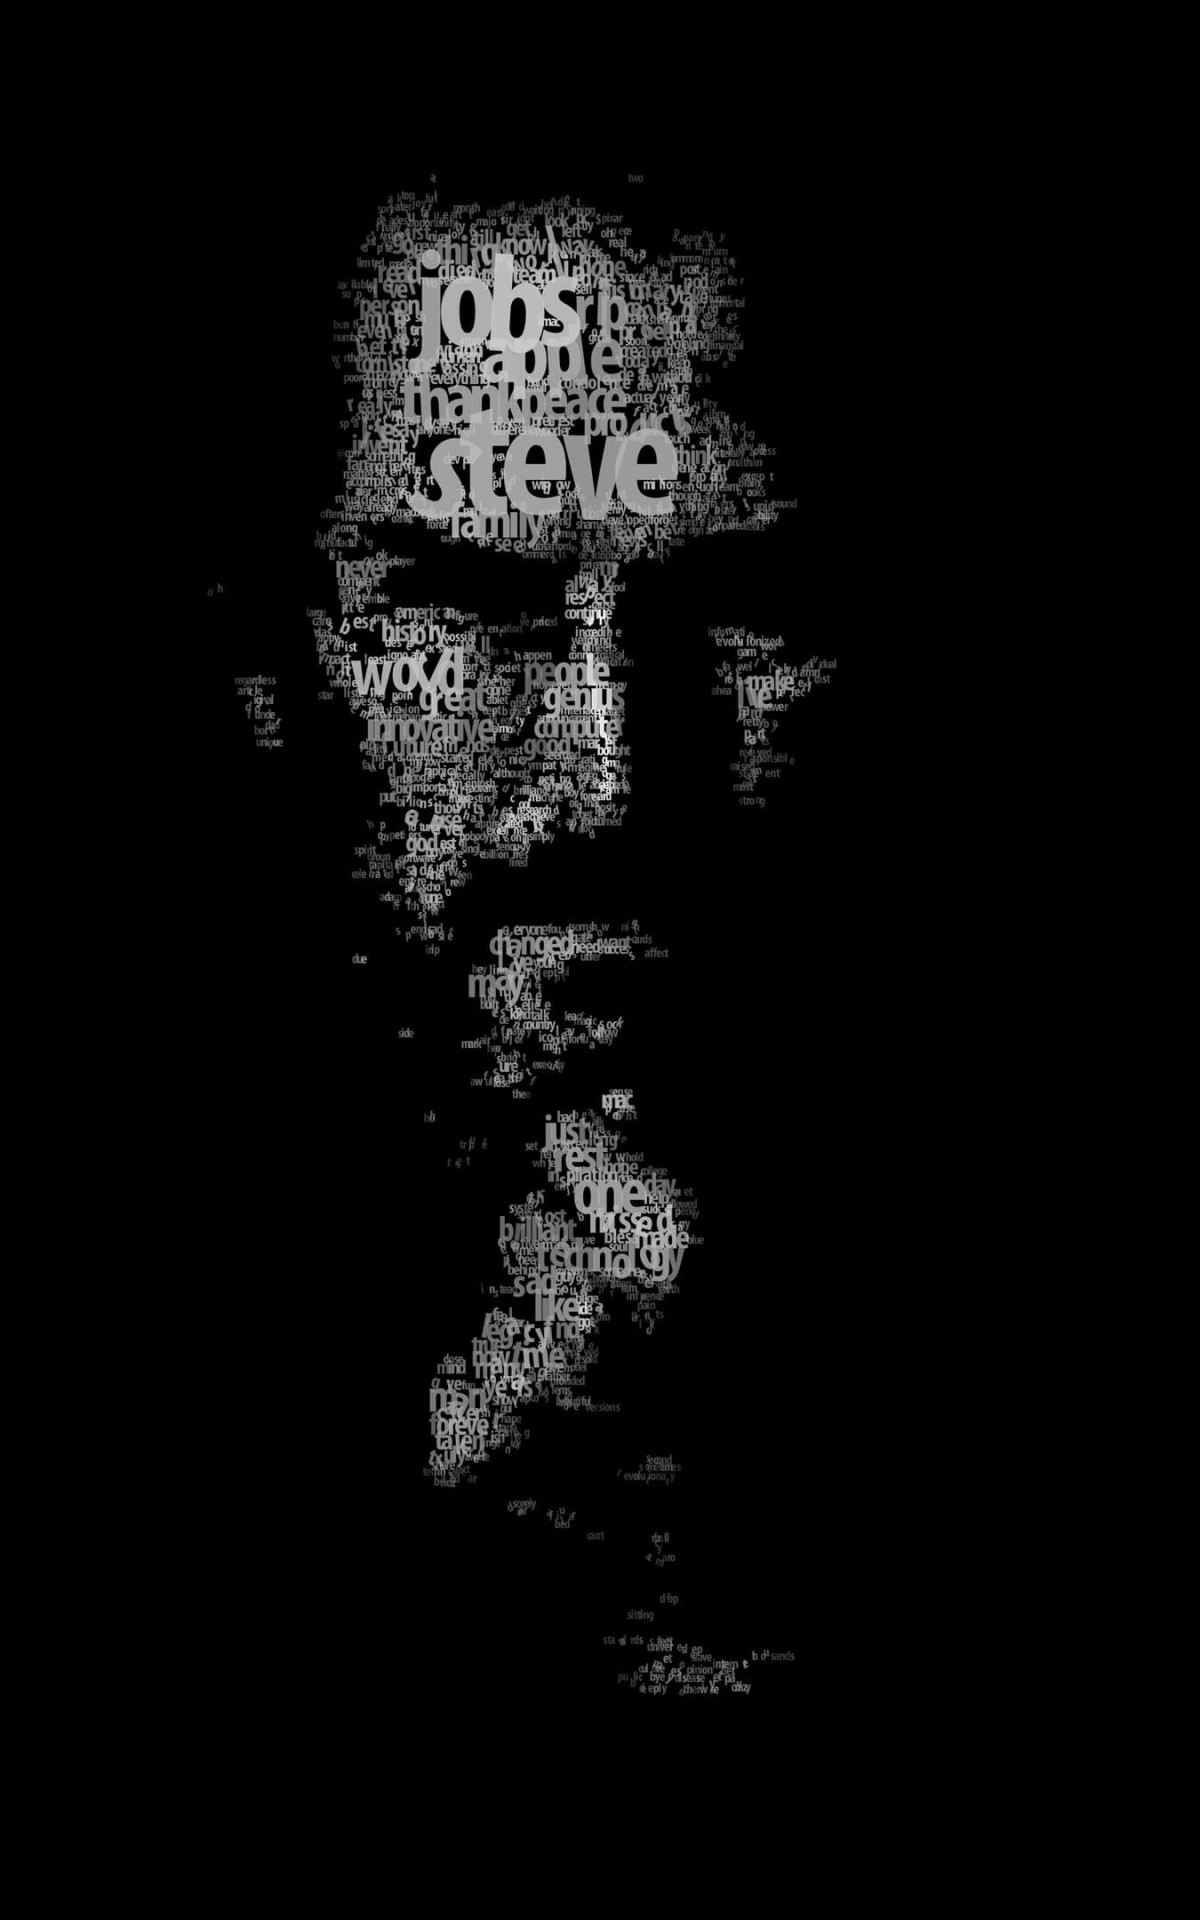 Typeface Portrait of Steve Jobs Wallpaper for Amazon Kindle Fire HDX